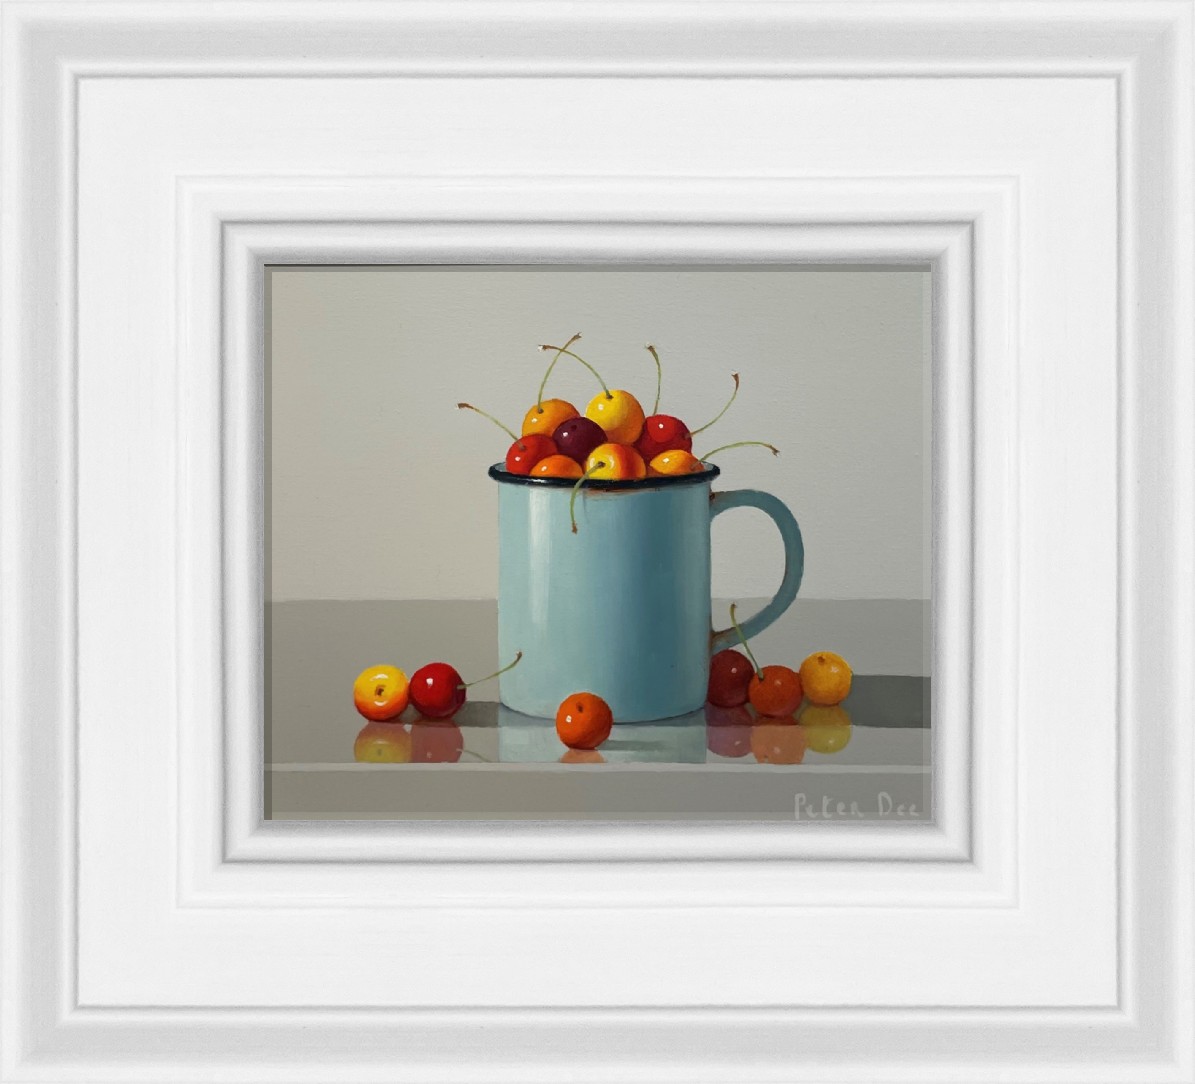 Vintage Enamelware Mug with Cherries by Peter Dee